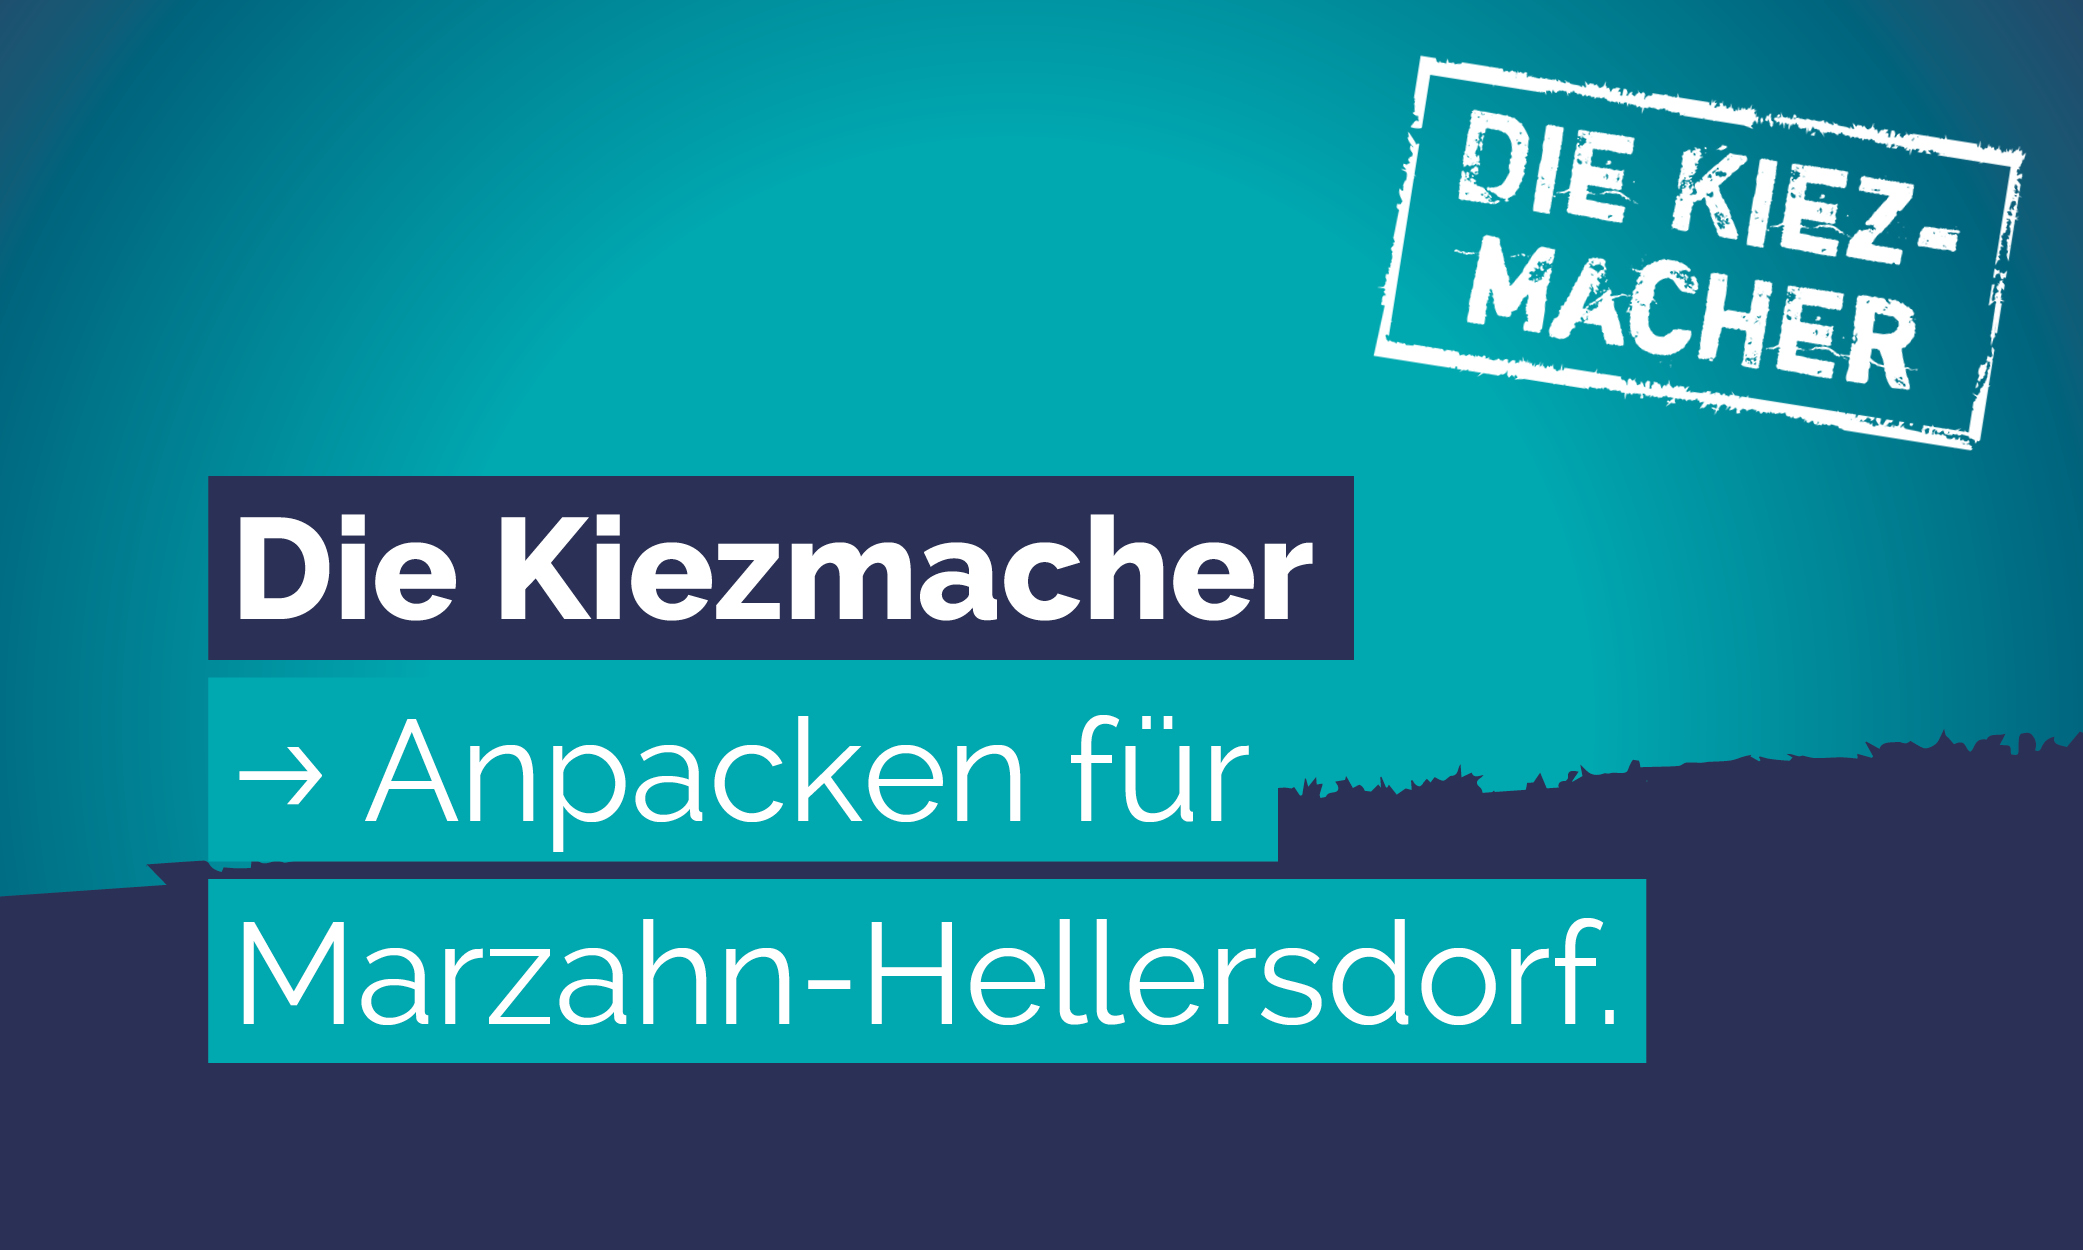 Wir Kiezmacher freuen uns sehr über den Zuspruch und das große Vertrauen der Wählerinnen und Wähler in Marzahn-Hellersdorf. Dafür sagen wir herzlich Danke! Der uns...